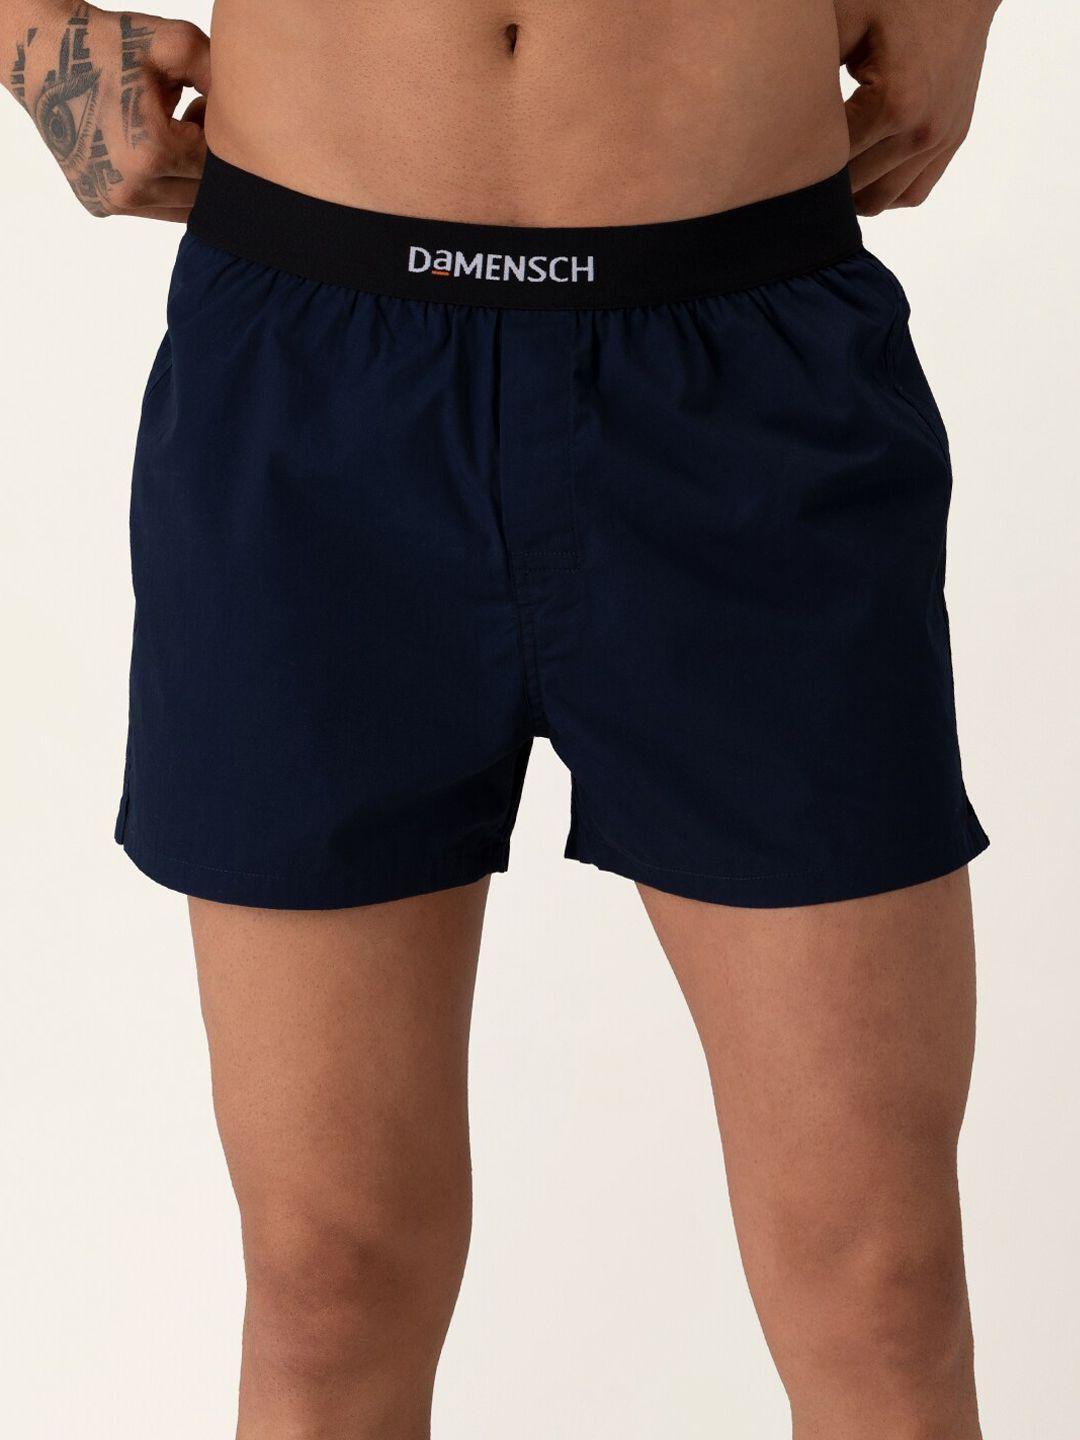 damensch men solid ultra-light cotton regular fit inner boxer dam-sld-sbx-clb